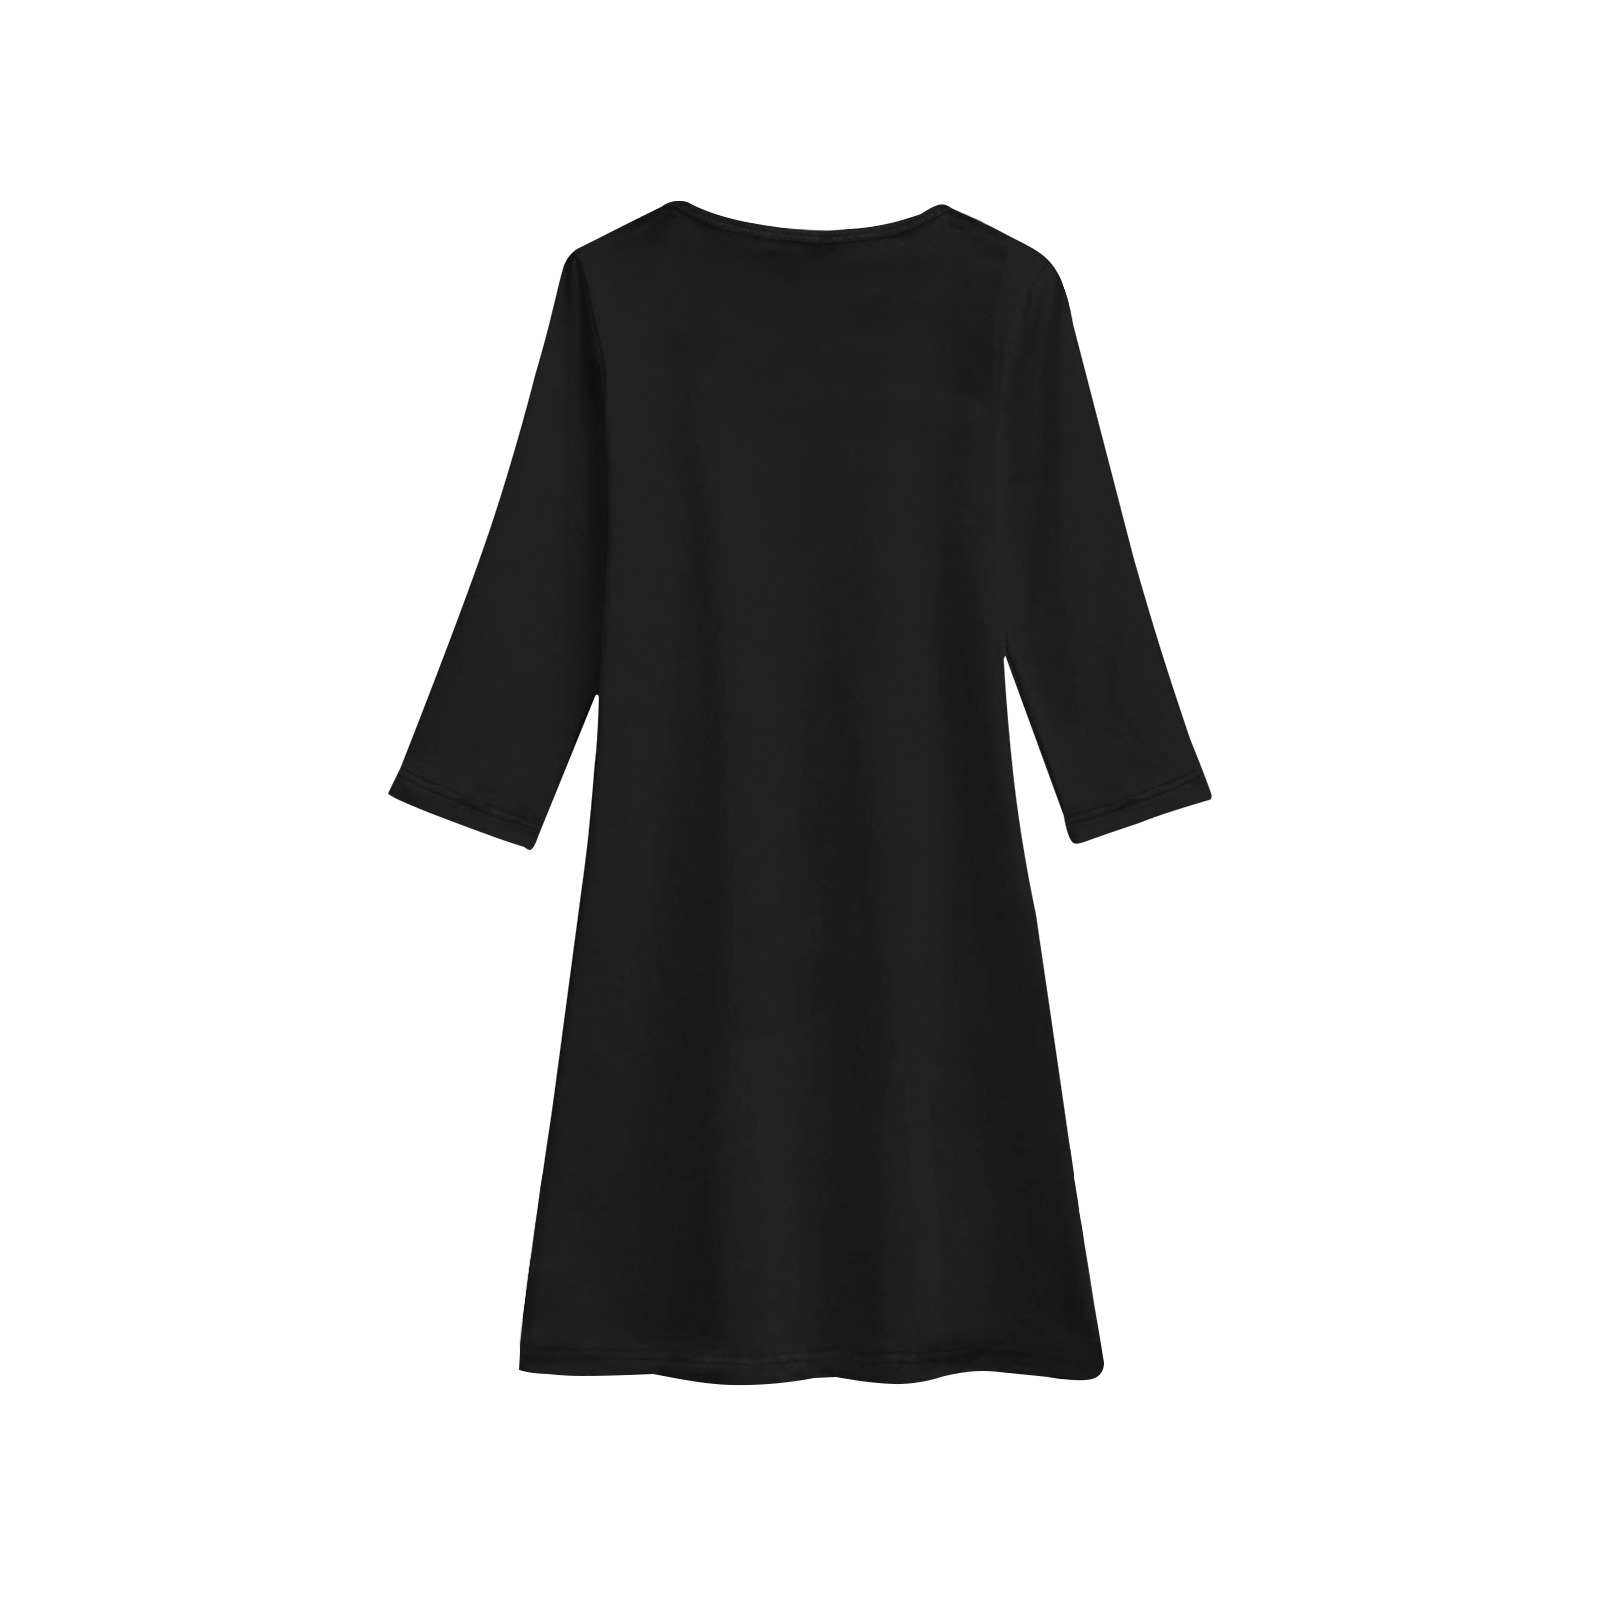 Tuxedo Costume Girls' Long Sleeve Dress (Model D59)